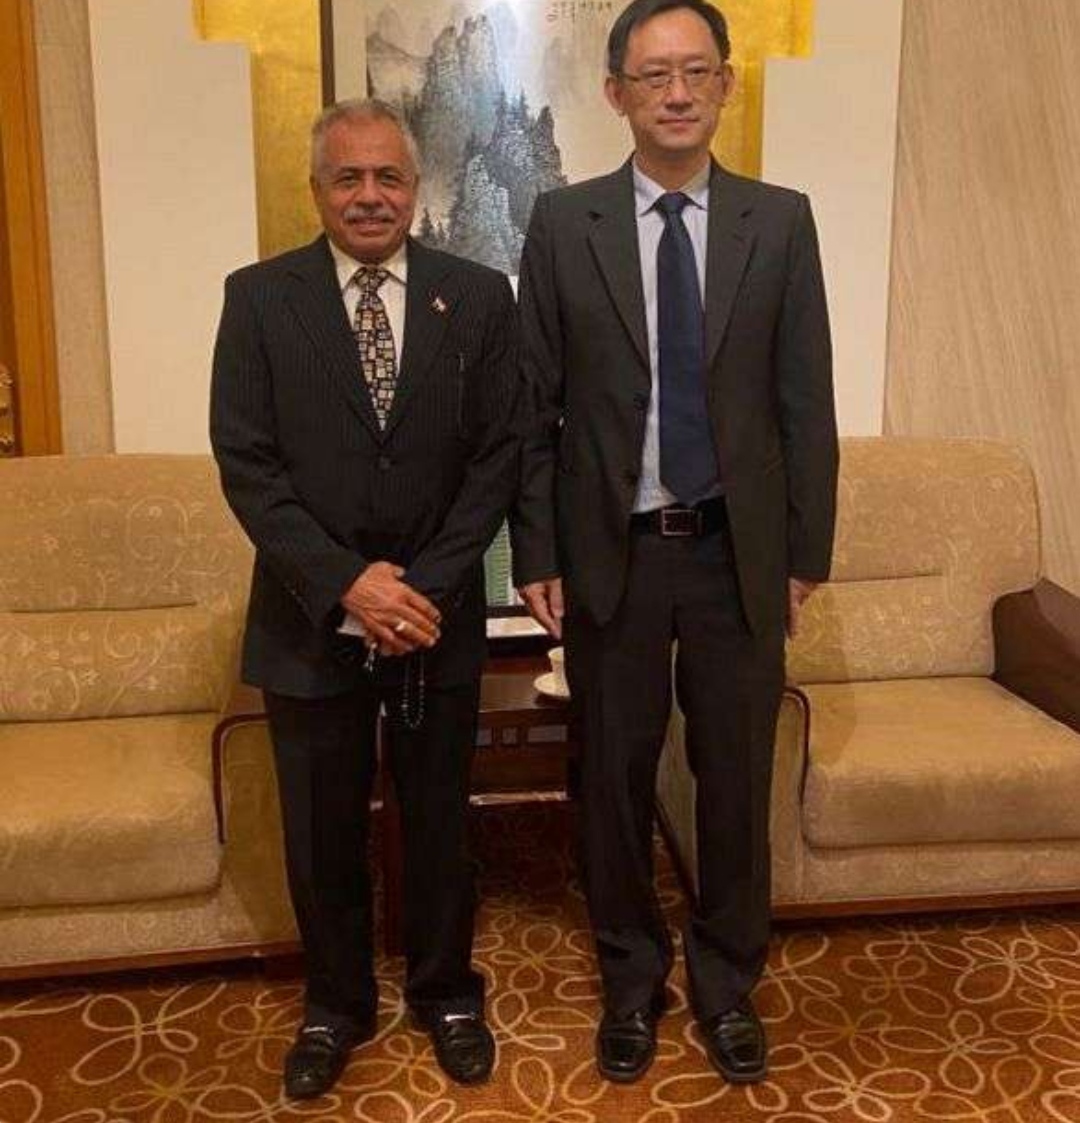 السفير الميتمي يبحث مع مسؤول صيني تعزيز التعاون الثنائي بين البلدين